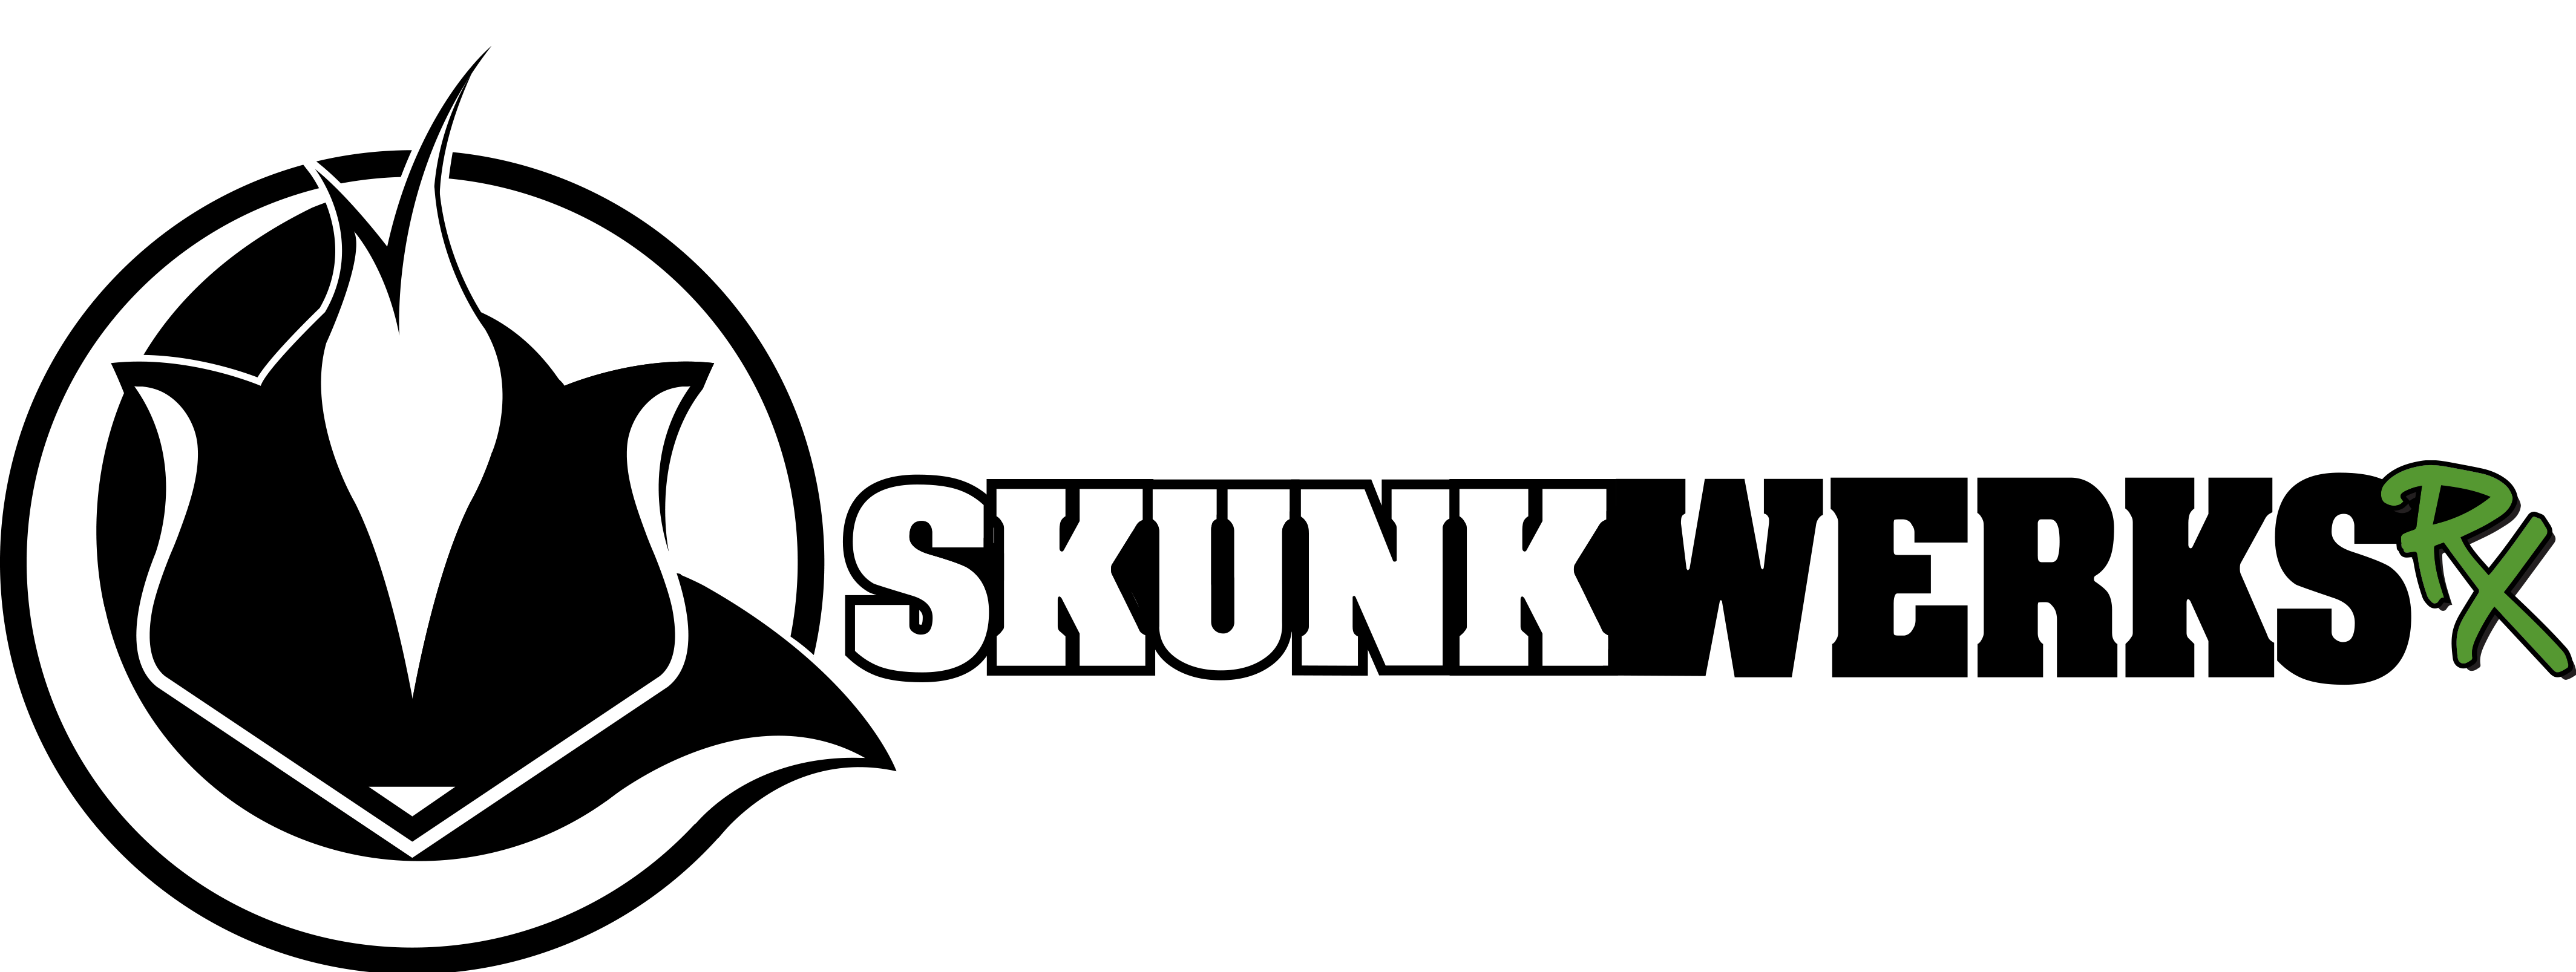 Skunkwerks Rx